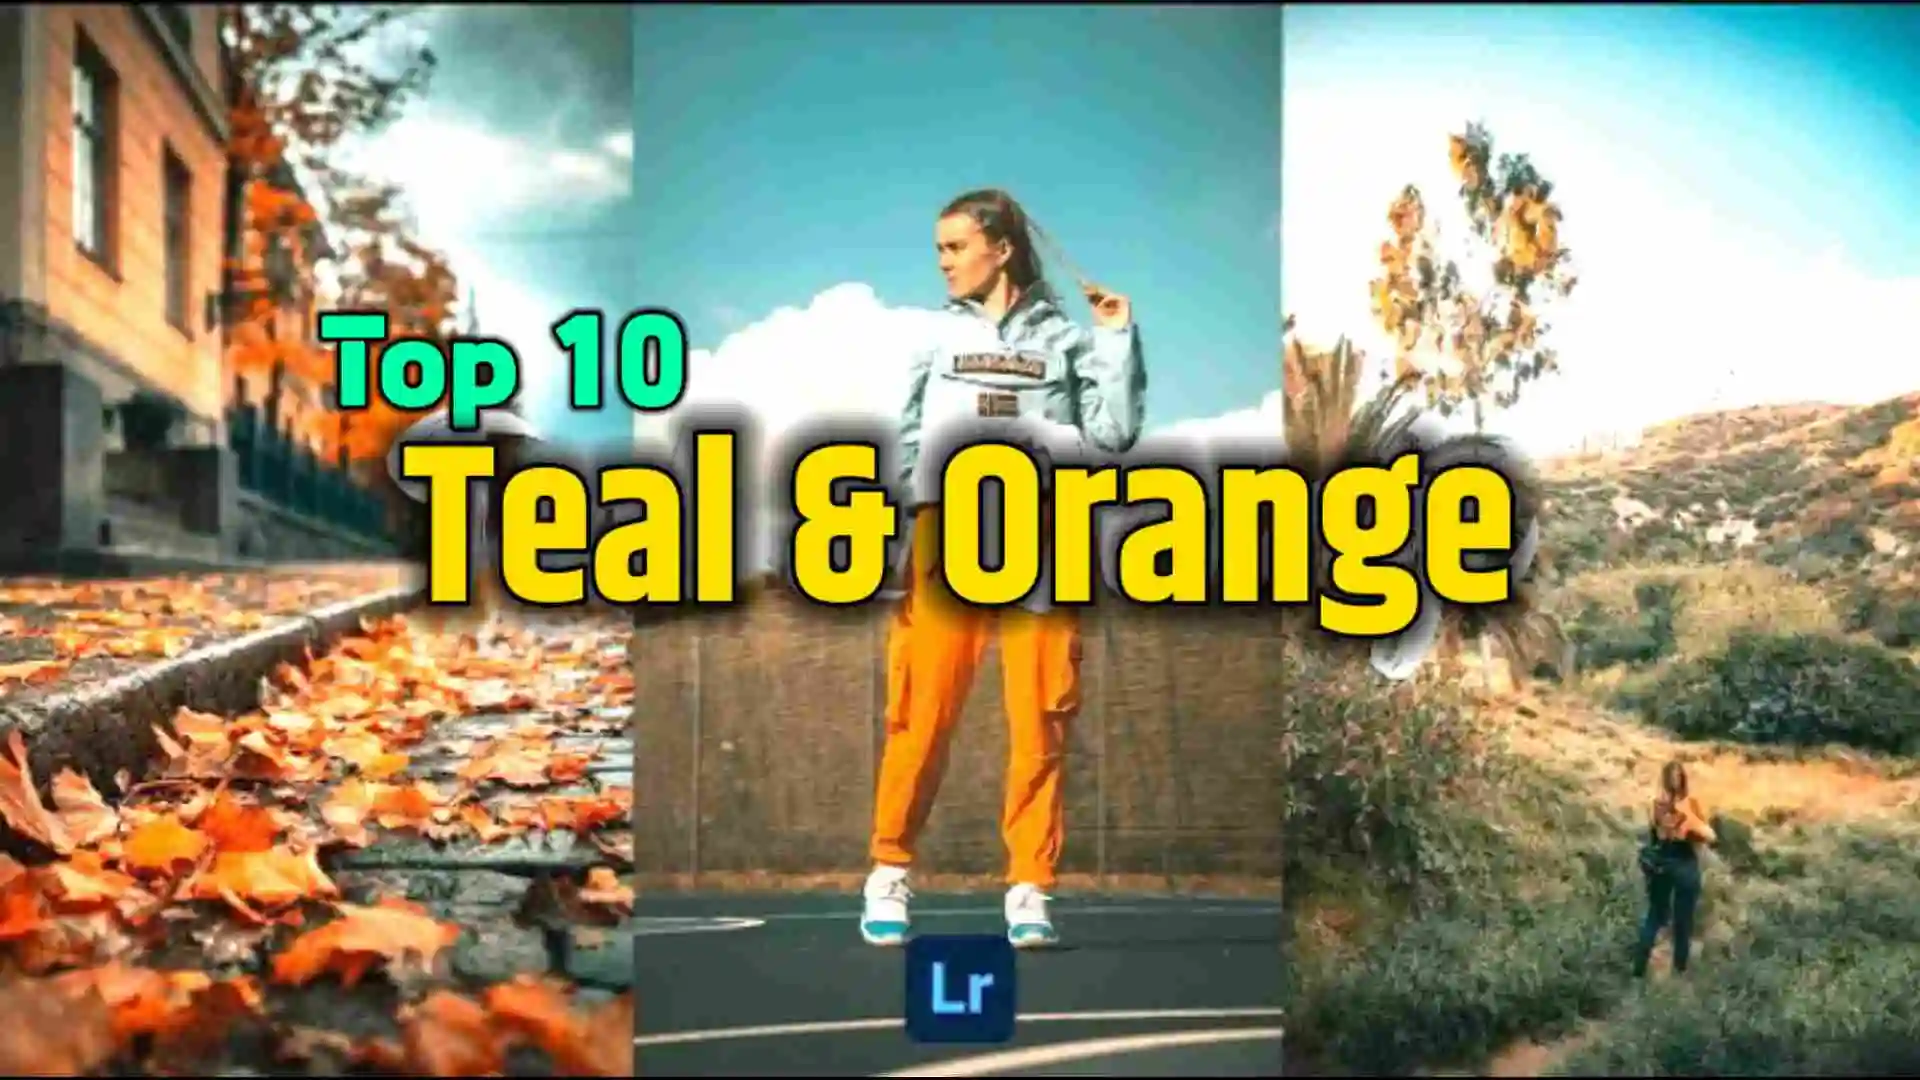 Top 10 Orange and Teal Lightroom Presets Free Download